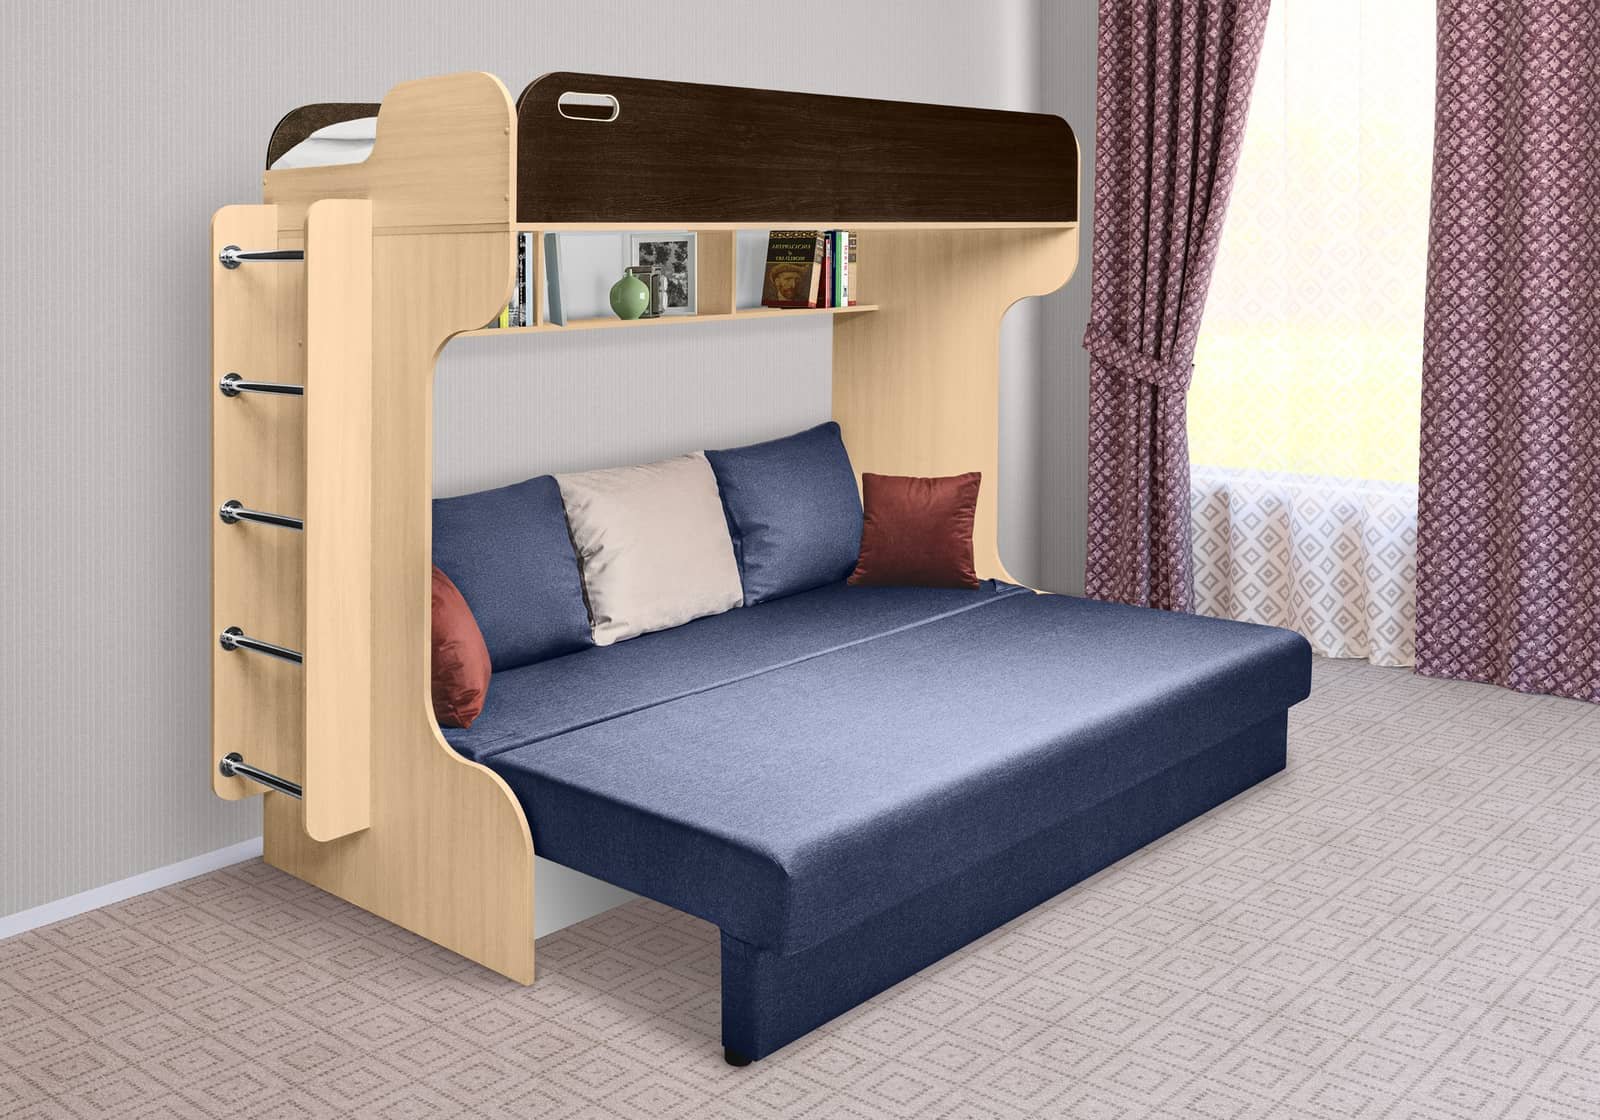 Двухъярусные диван кровати спб. Кровать 2х ярусная дива. Кровать чердак с диваном Лидер-7 + Лидер-9. Двухъярусная кровать с диваном ами мебель.